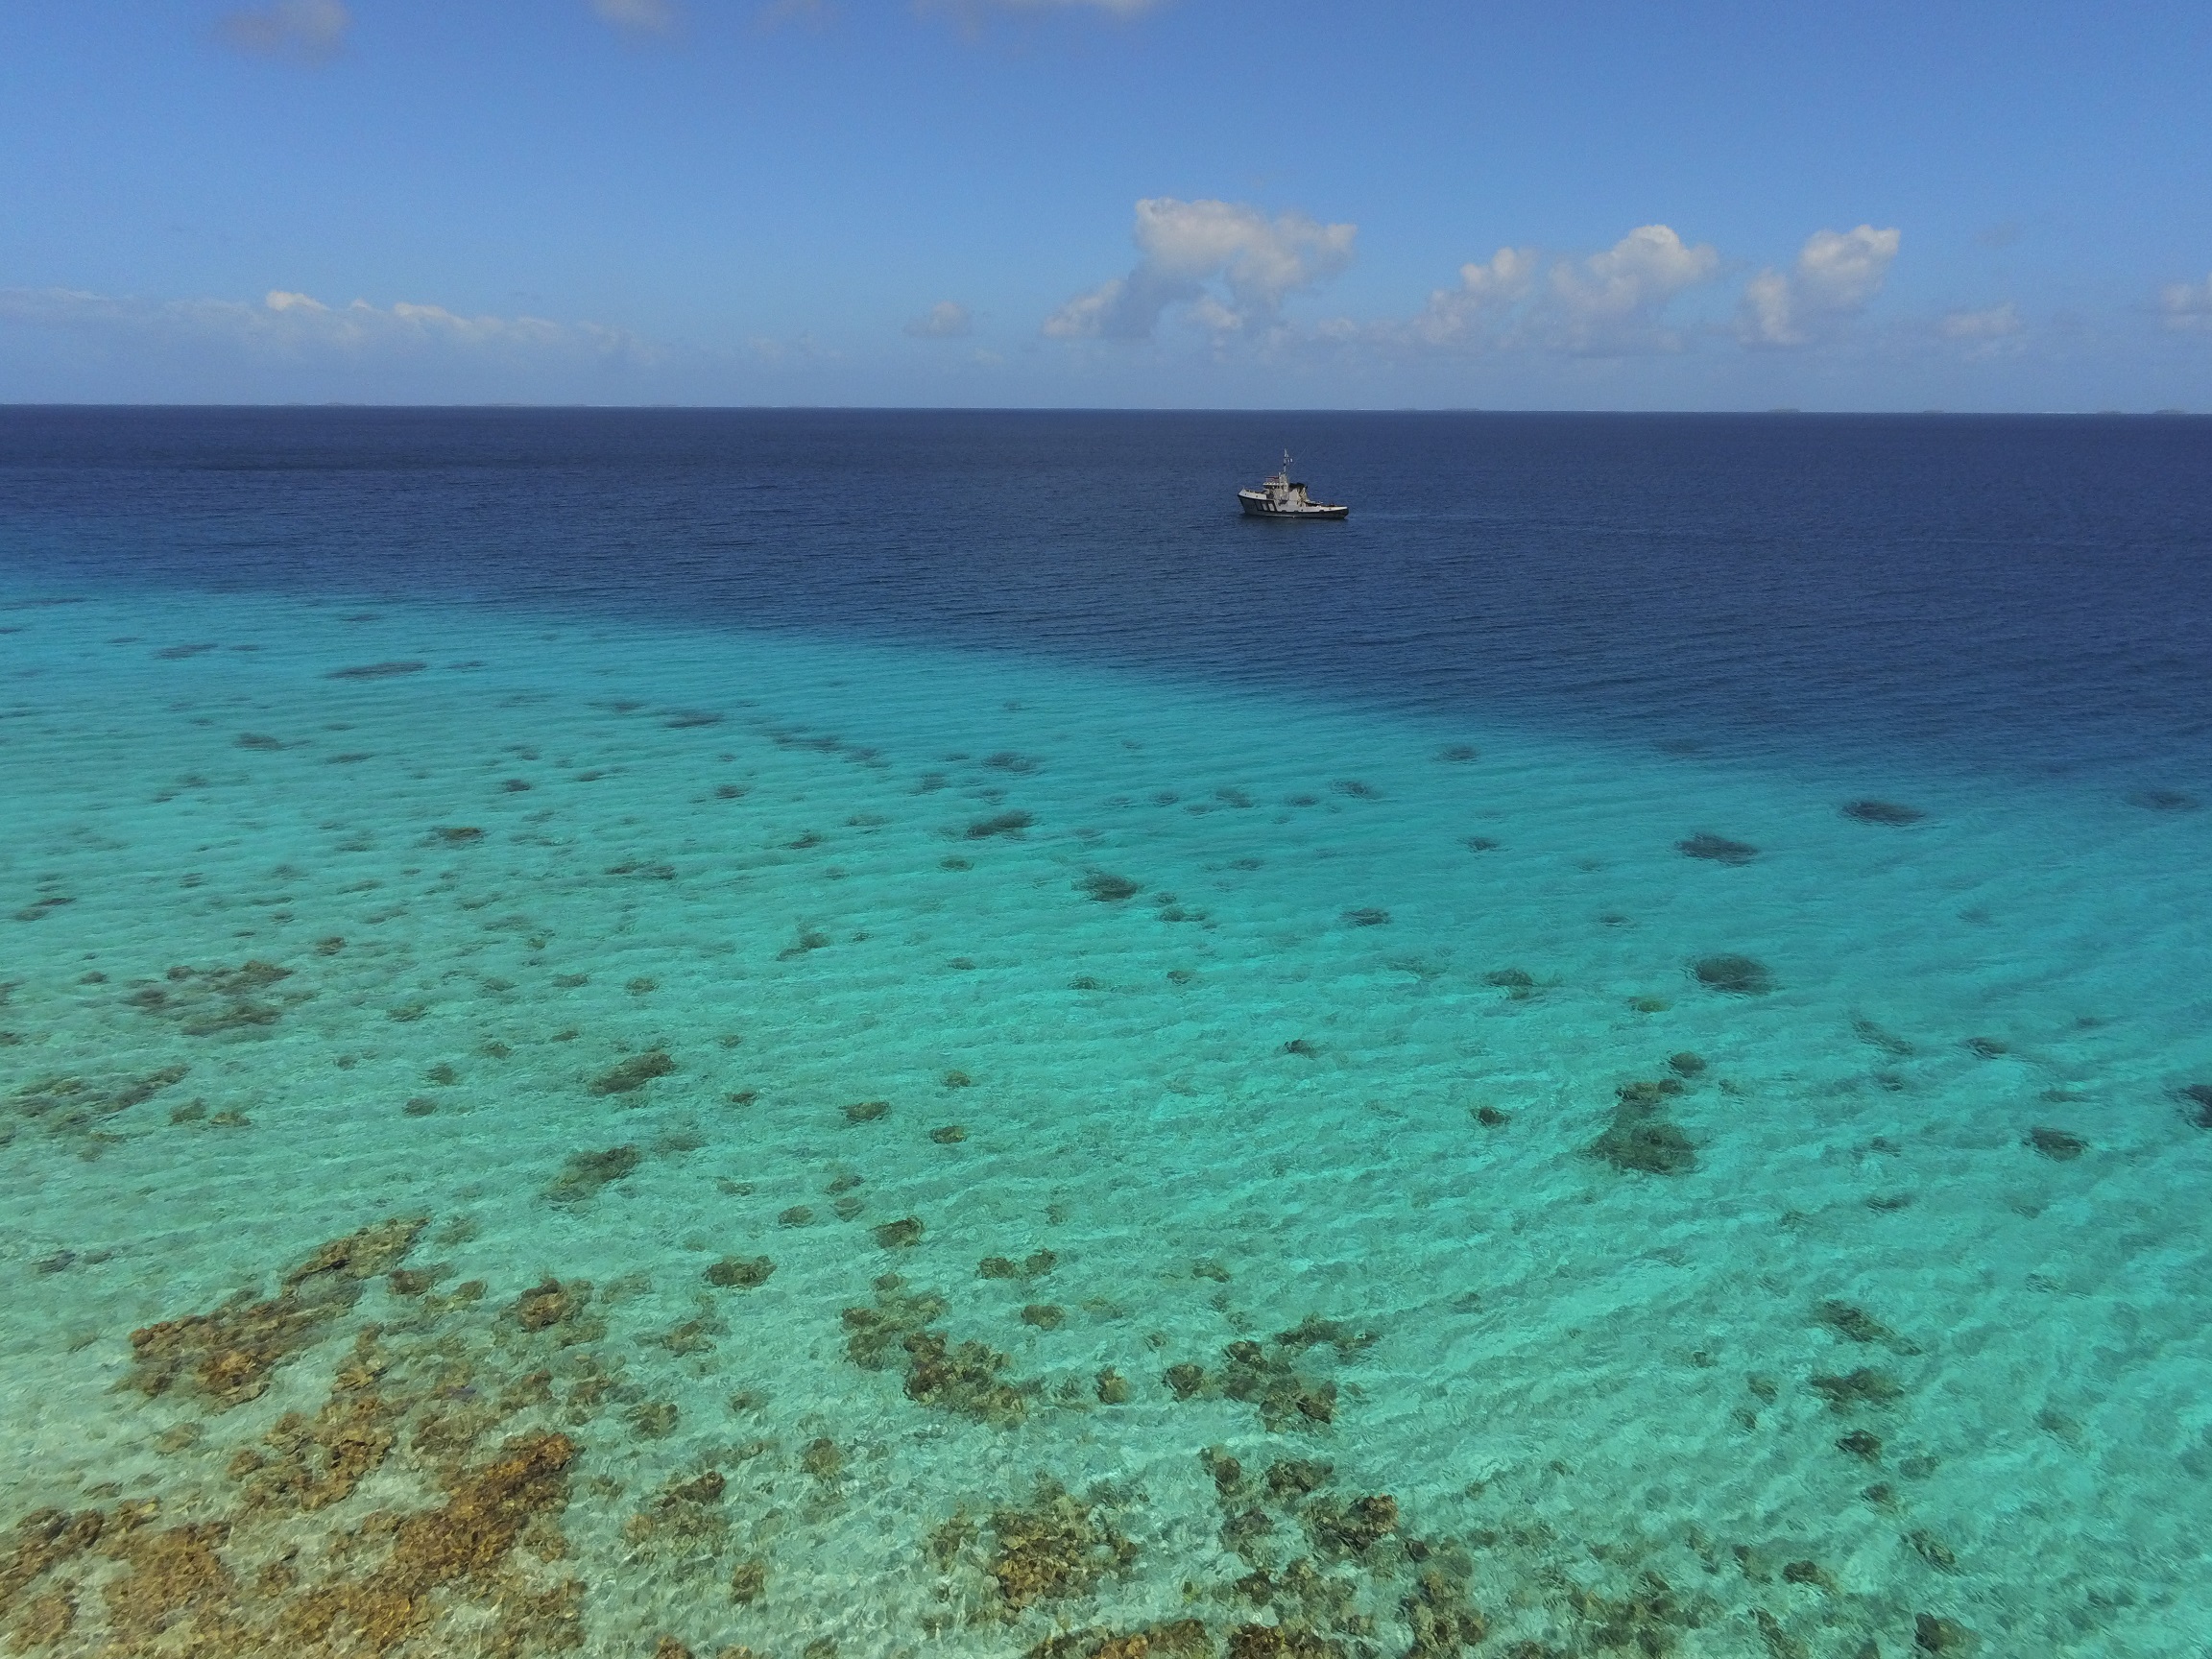 Le Maroa en mission de surveillance aux Tuamotu